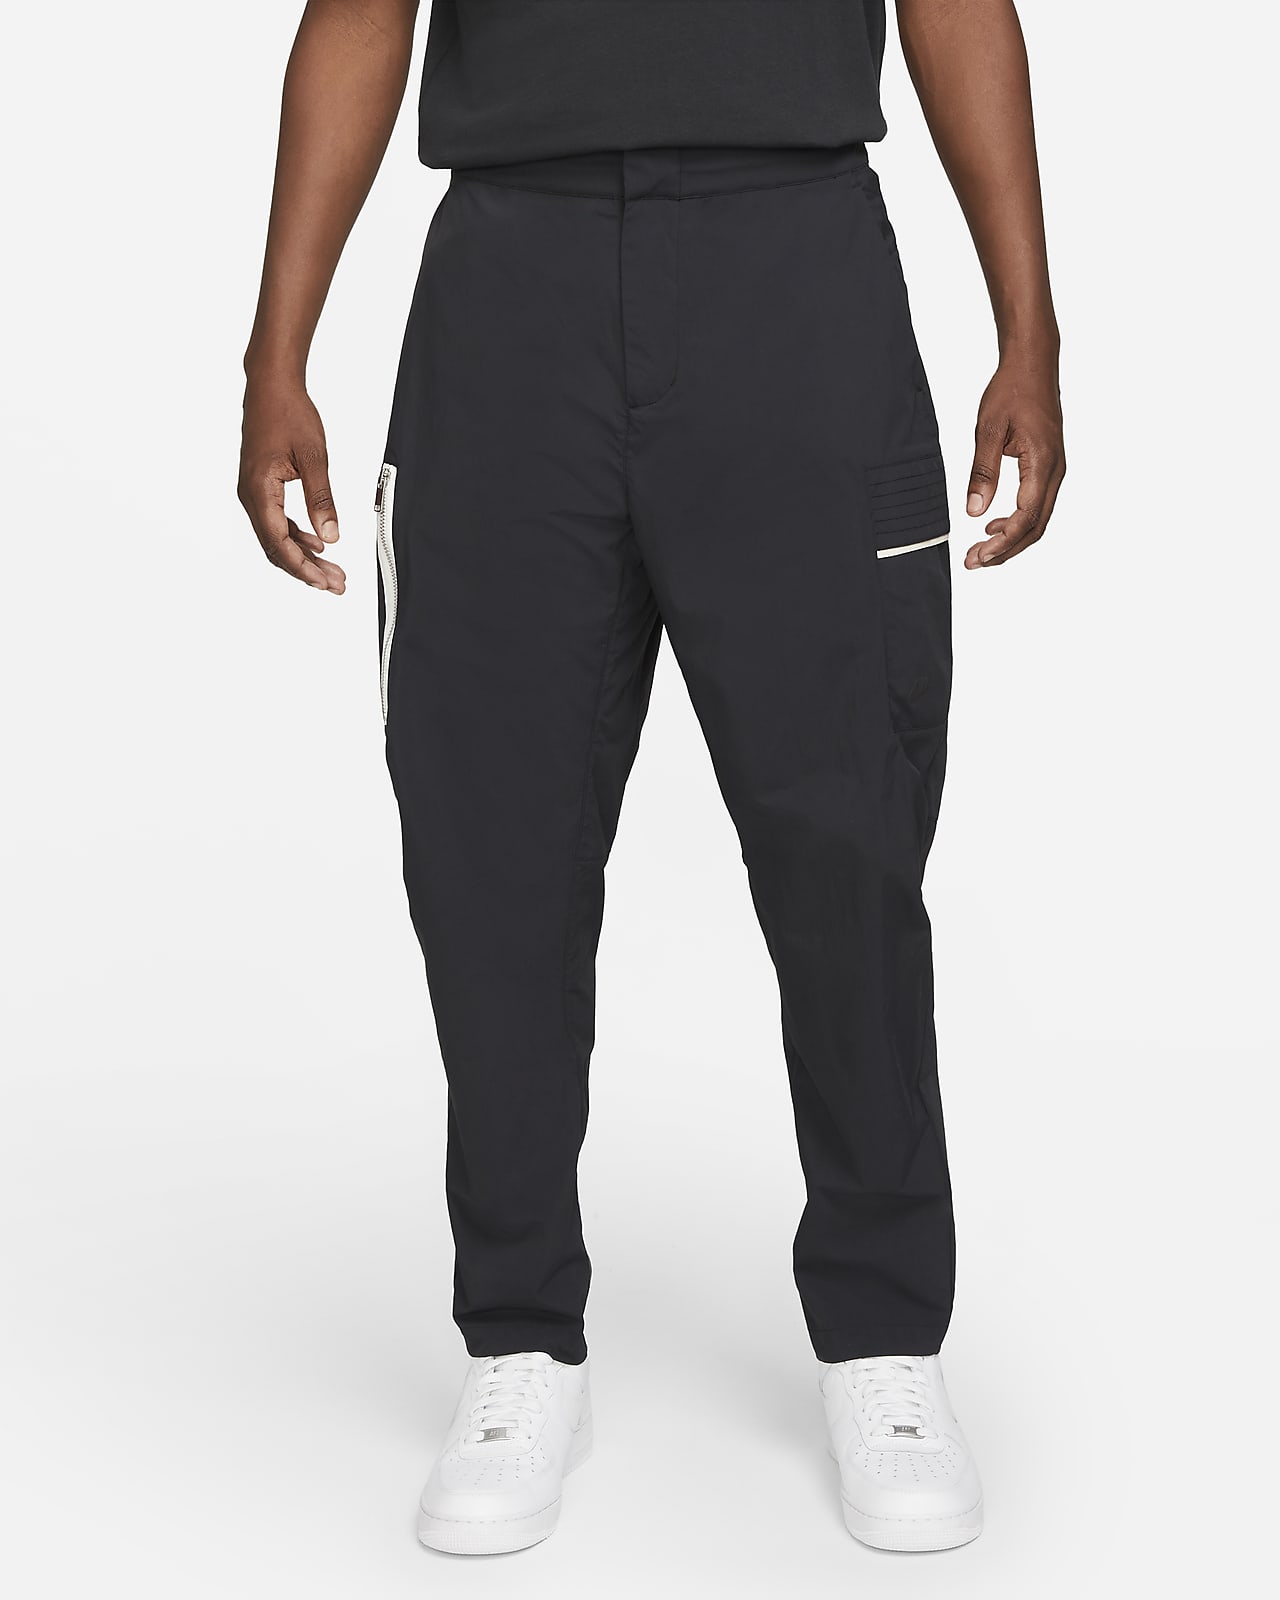 Nike Sportswear Style Essentials Men's Utility Trousers